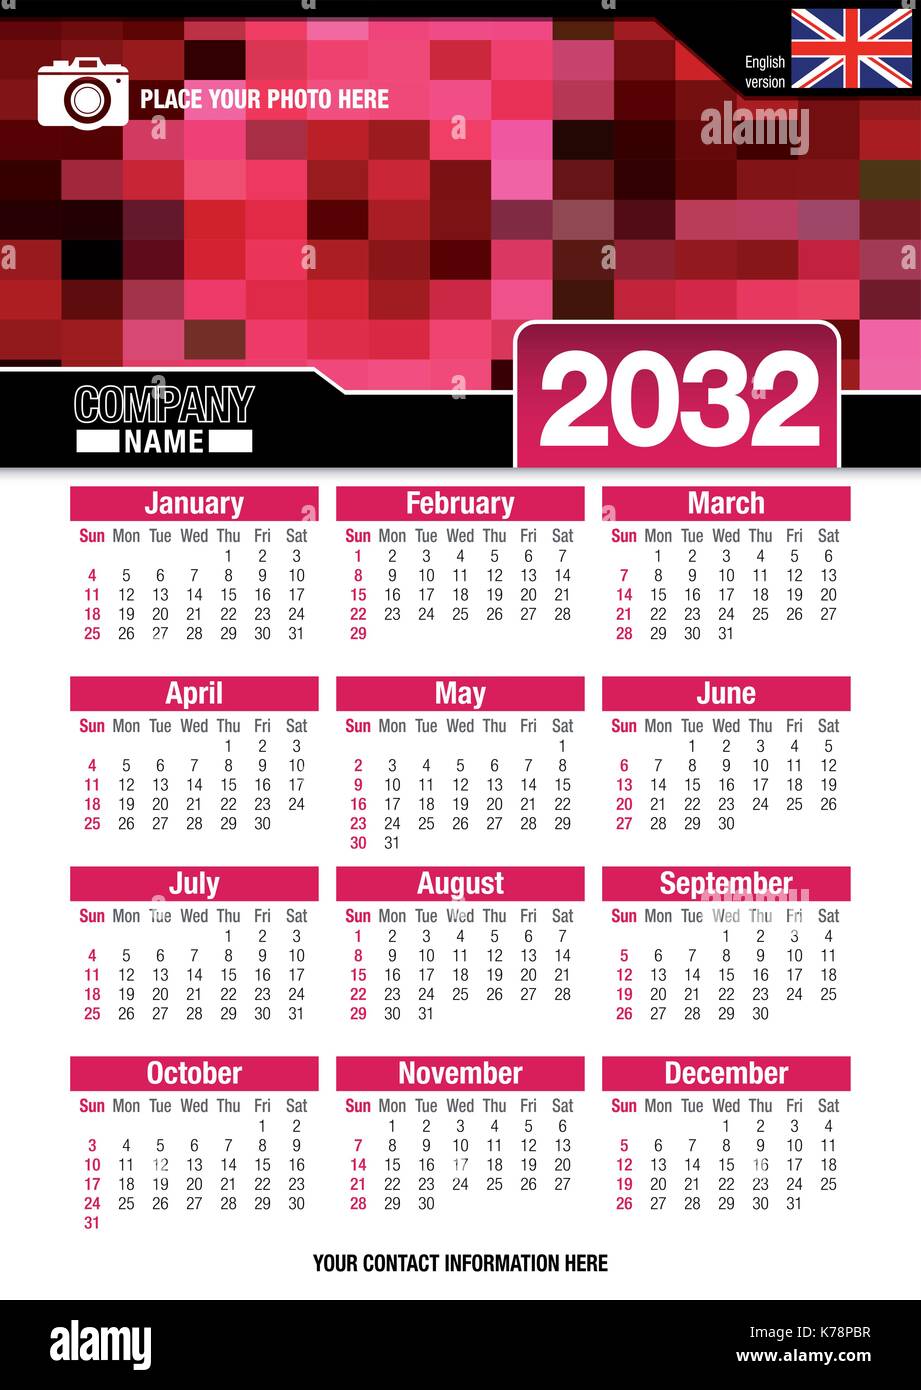 Utile calendario da parete 2032 con design di colori rosso mosaico. Formato A4 verticale. Dimensioni: 210mm x 297mm. Versione Inglese - immagine vettoriale Illustrazione Vettoriale